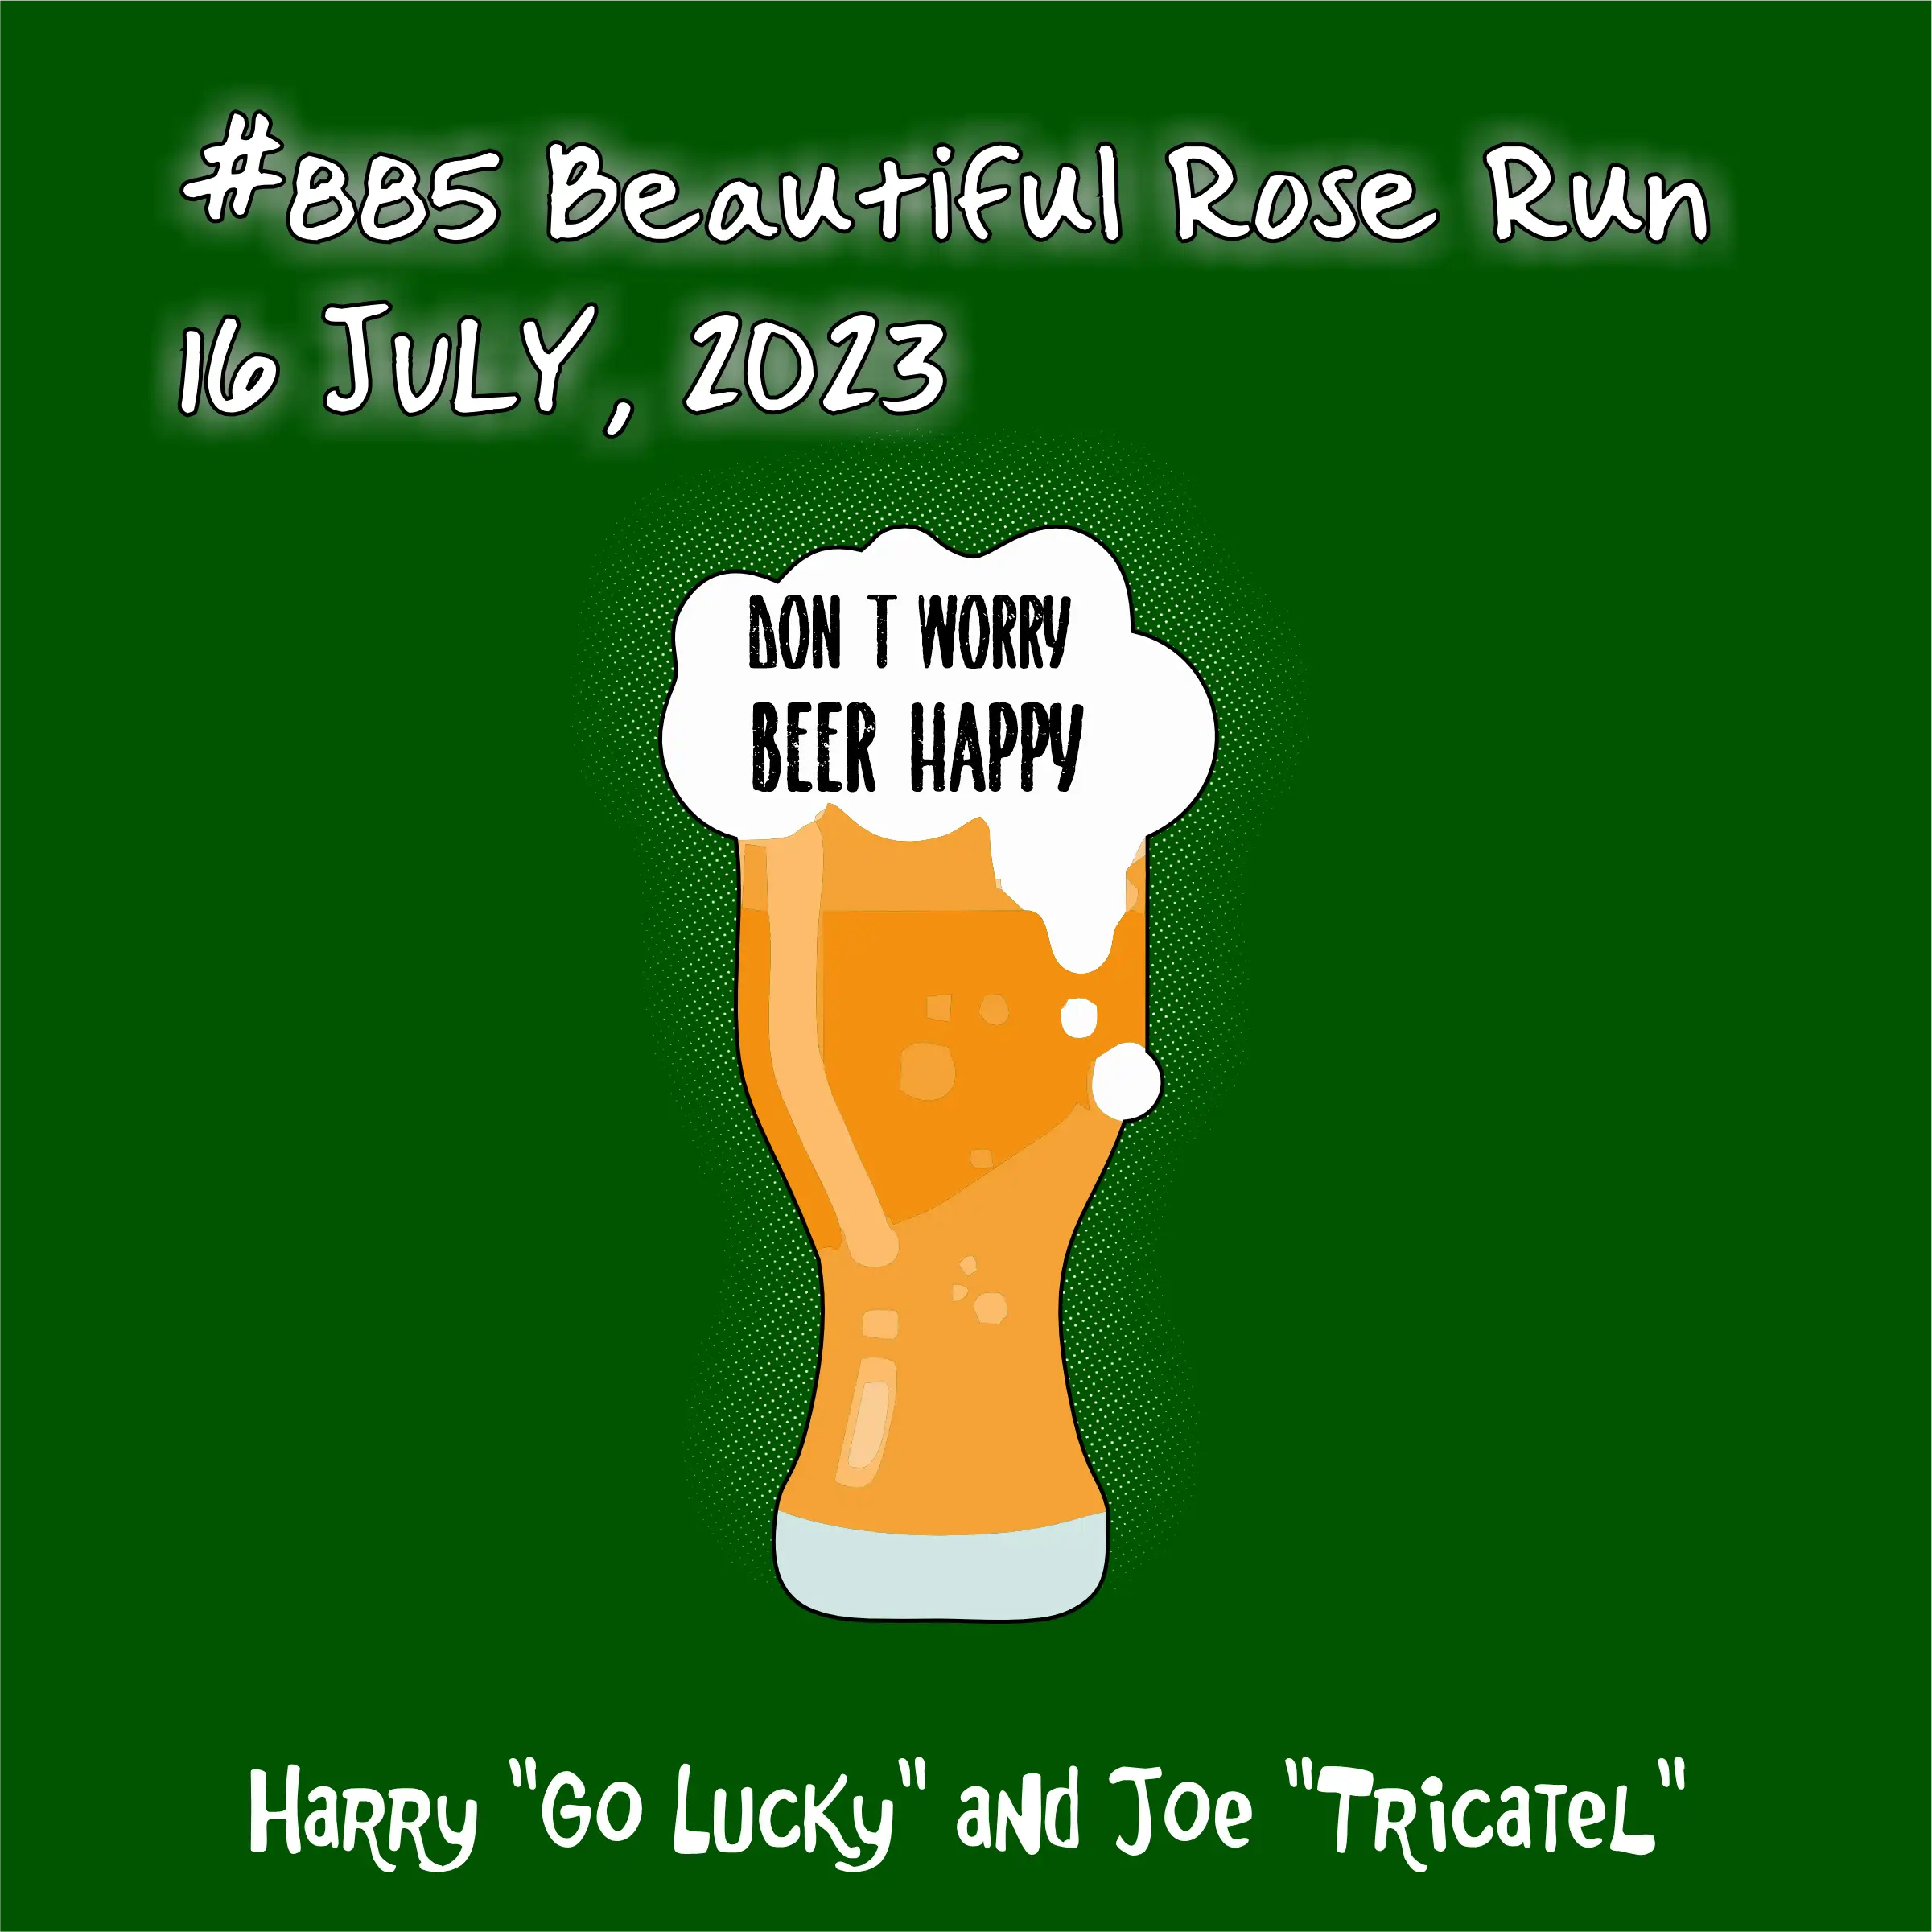 885 run bell rose